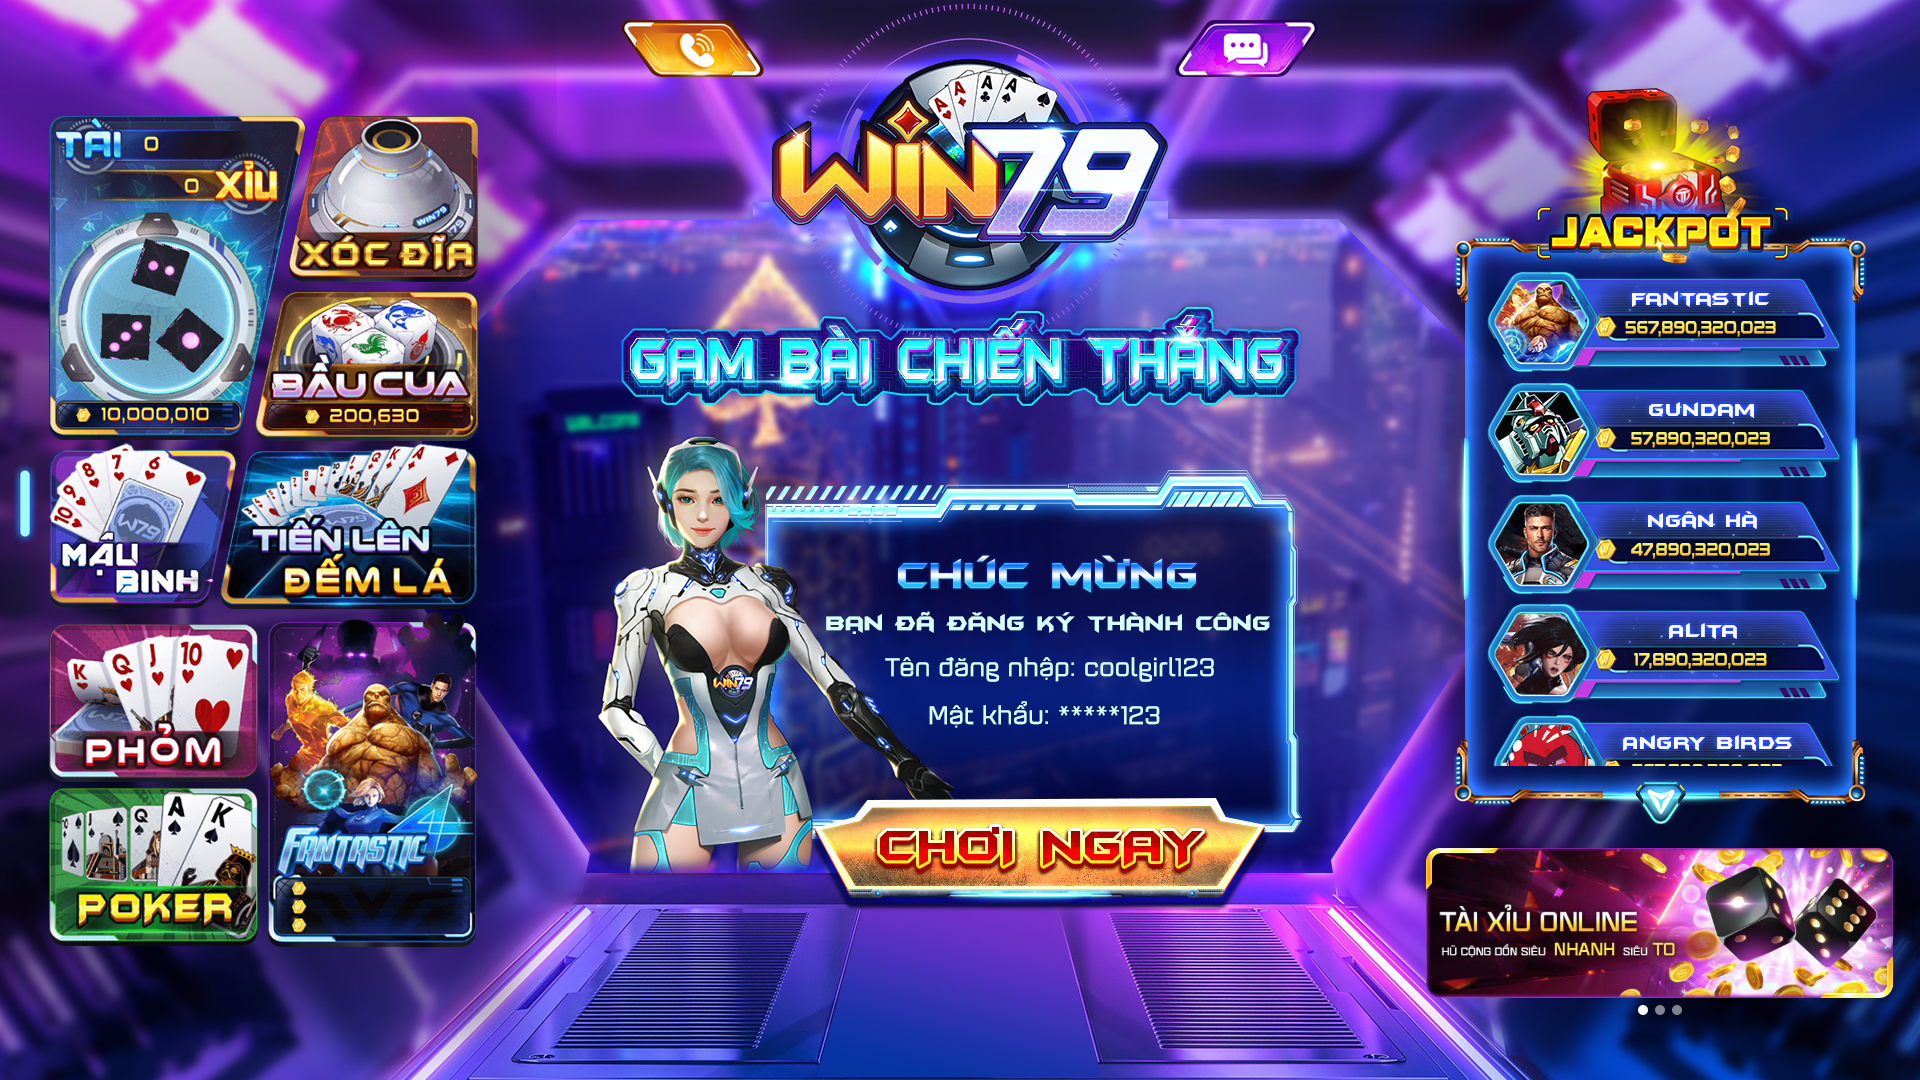 Cách chơi Mậu Binh tại cổng game Win79